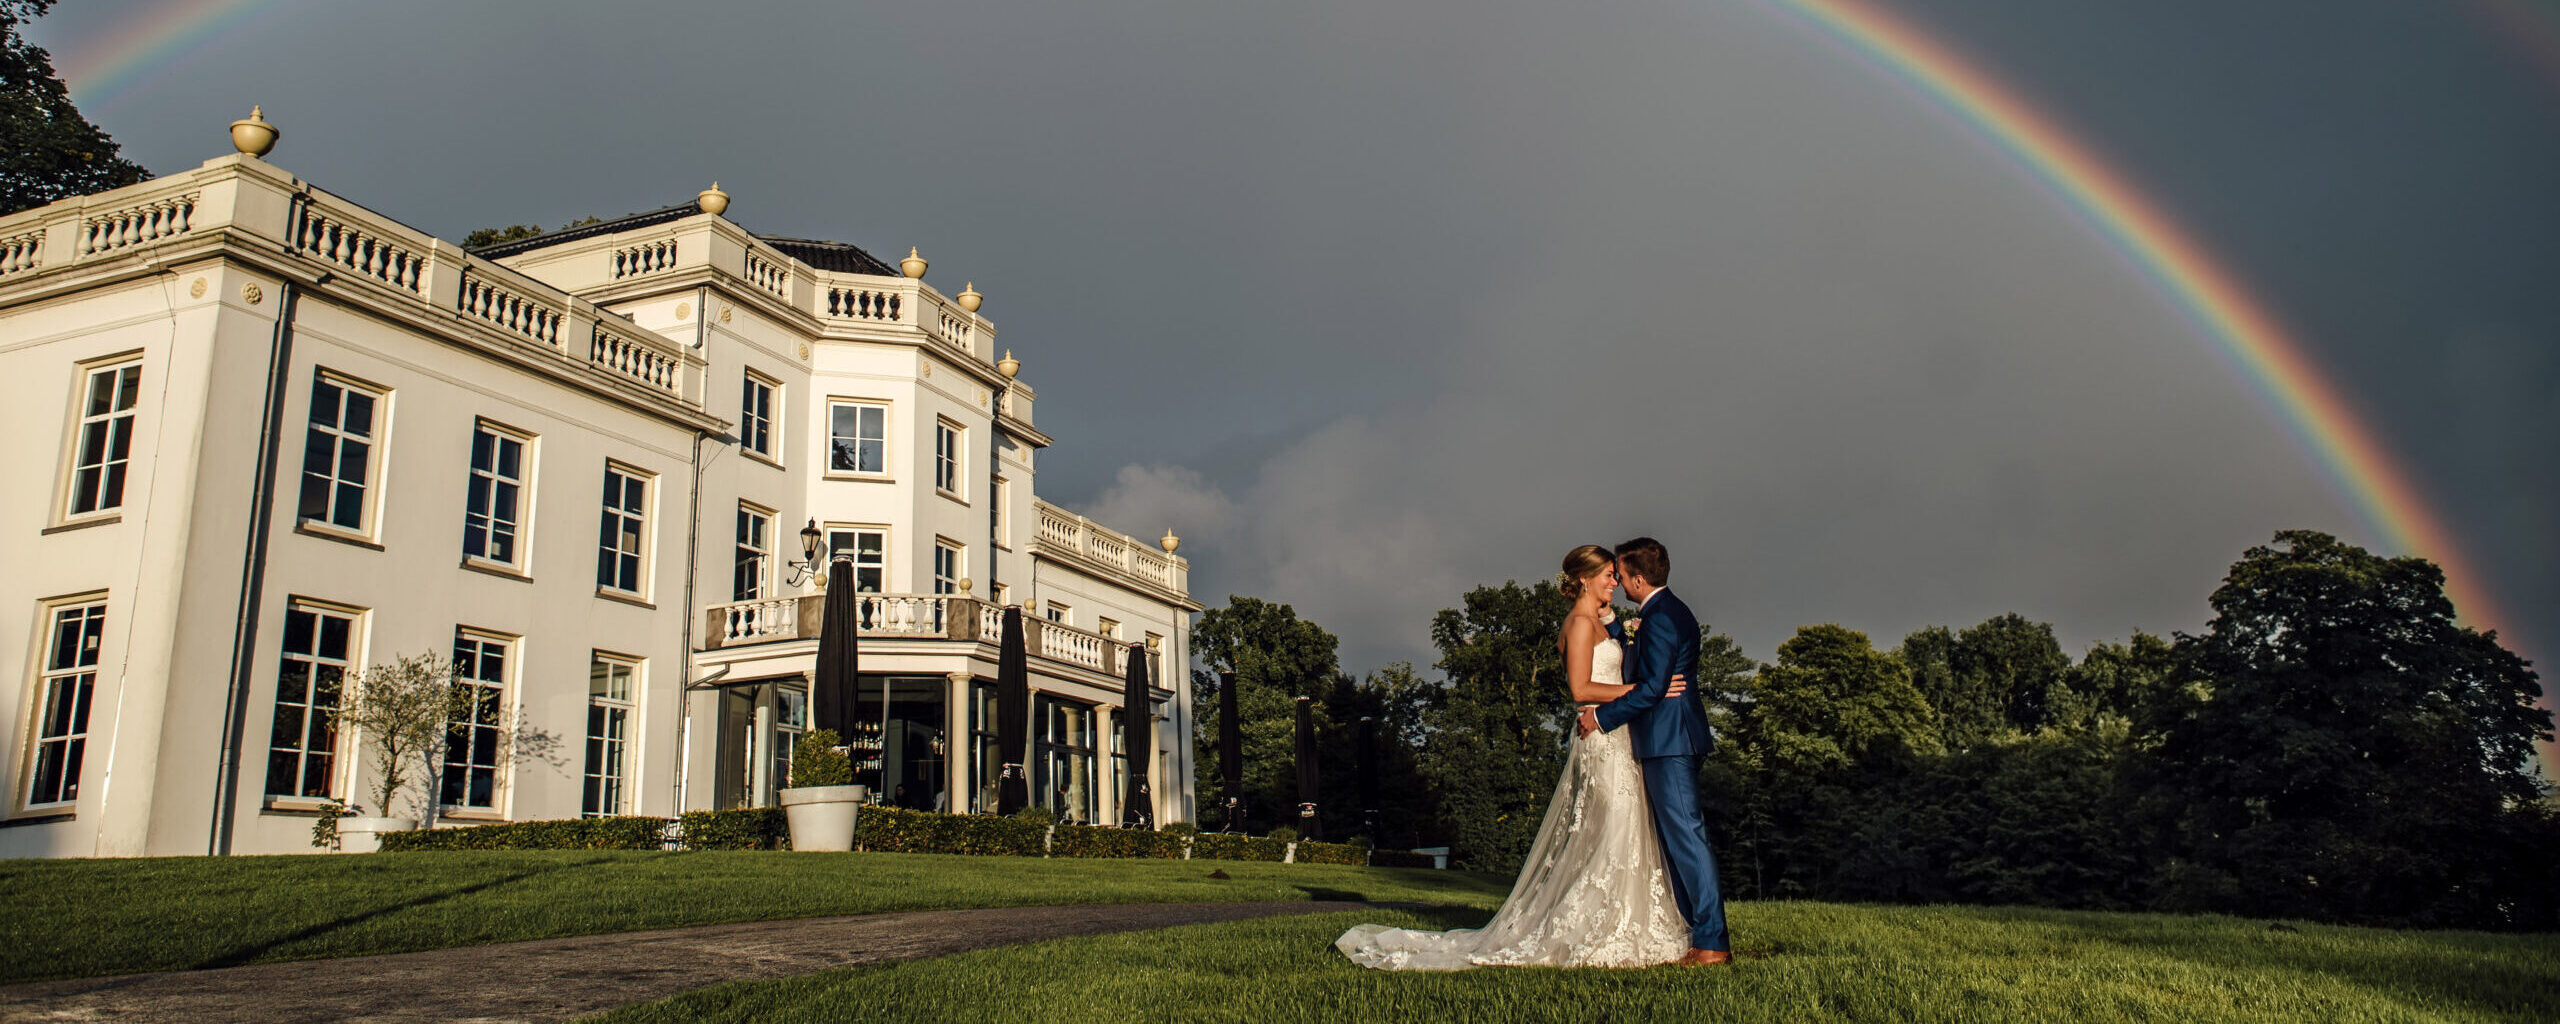 bruidspaar kust onder een regenboog voor stadsvilla sonsbeek, buiten trouwen, stadsvilla trouwen, arnhem, witte villa, huwelijk